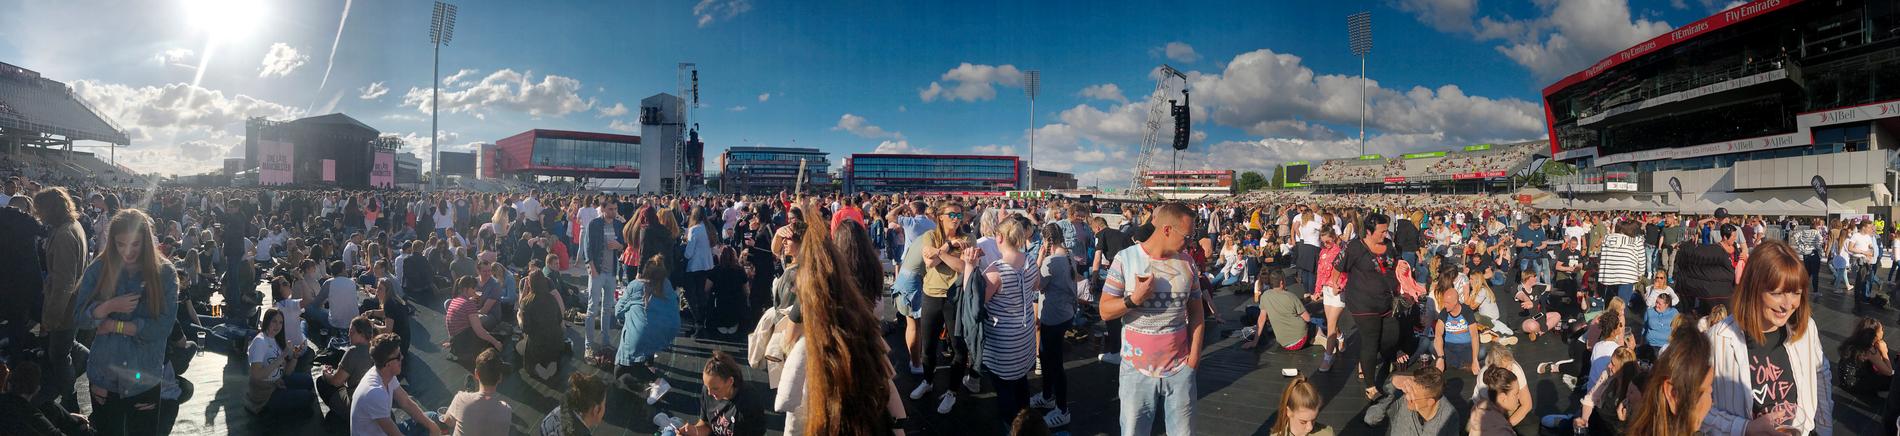 50 000 i publiken på Old Trafford cricket ground.